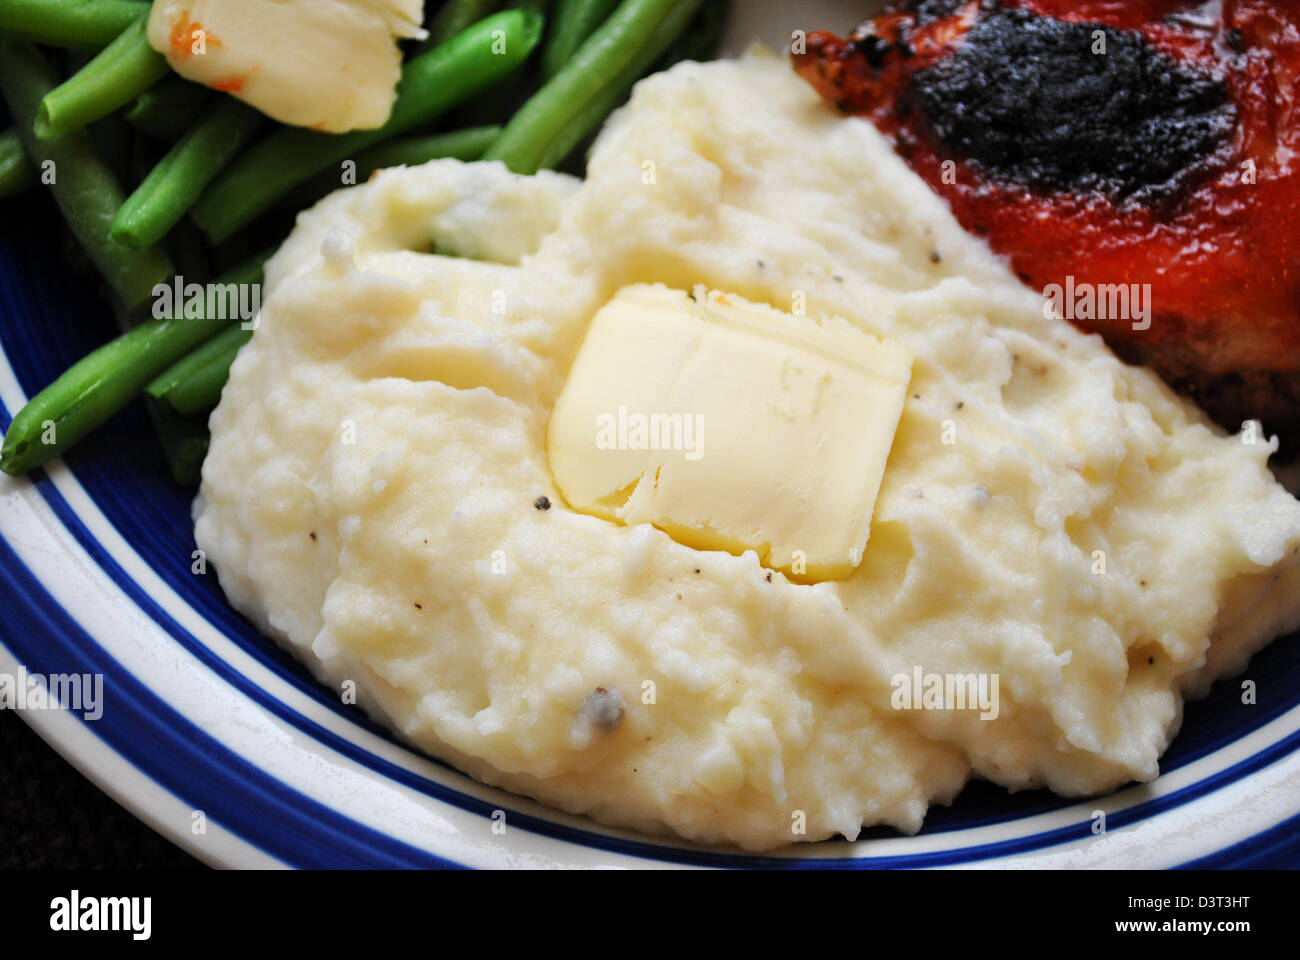 Accompagnement de purée de pommes de terre avec une noisette de beurre Banque D'Images